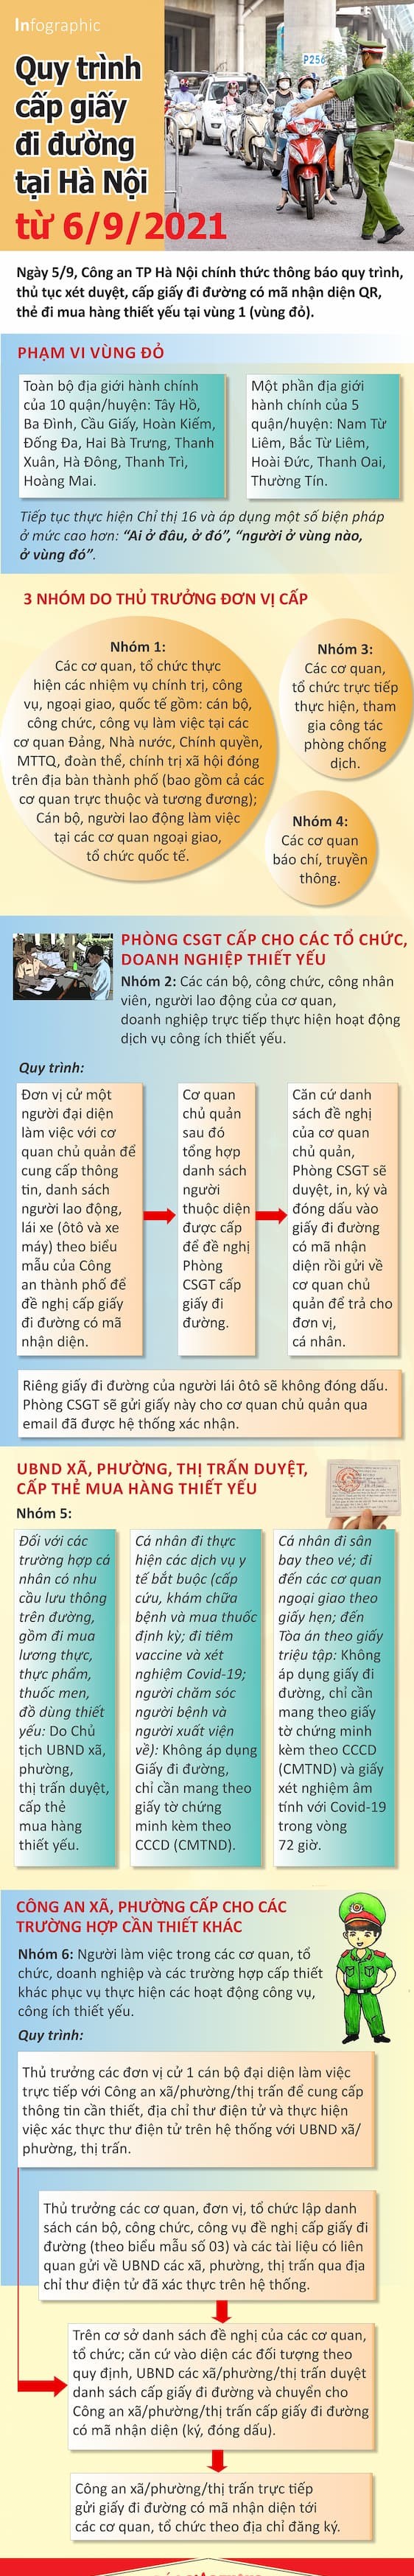 Quy trình cấp giấy đi đường tại Hà Nội từ ngày 6/9 theo hướng dẫn của Công An Tp Hà Nội